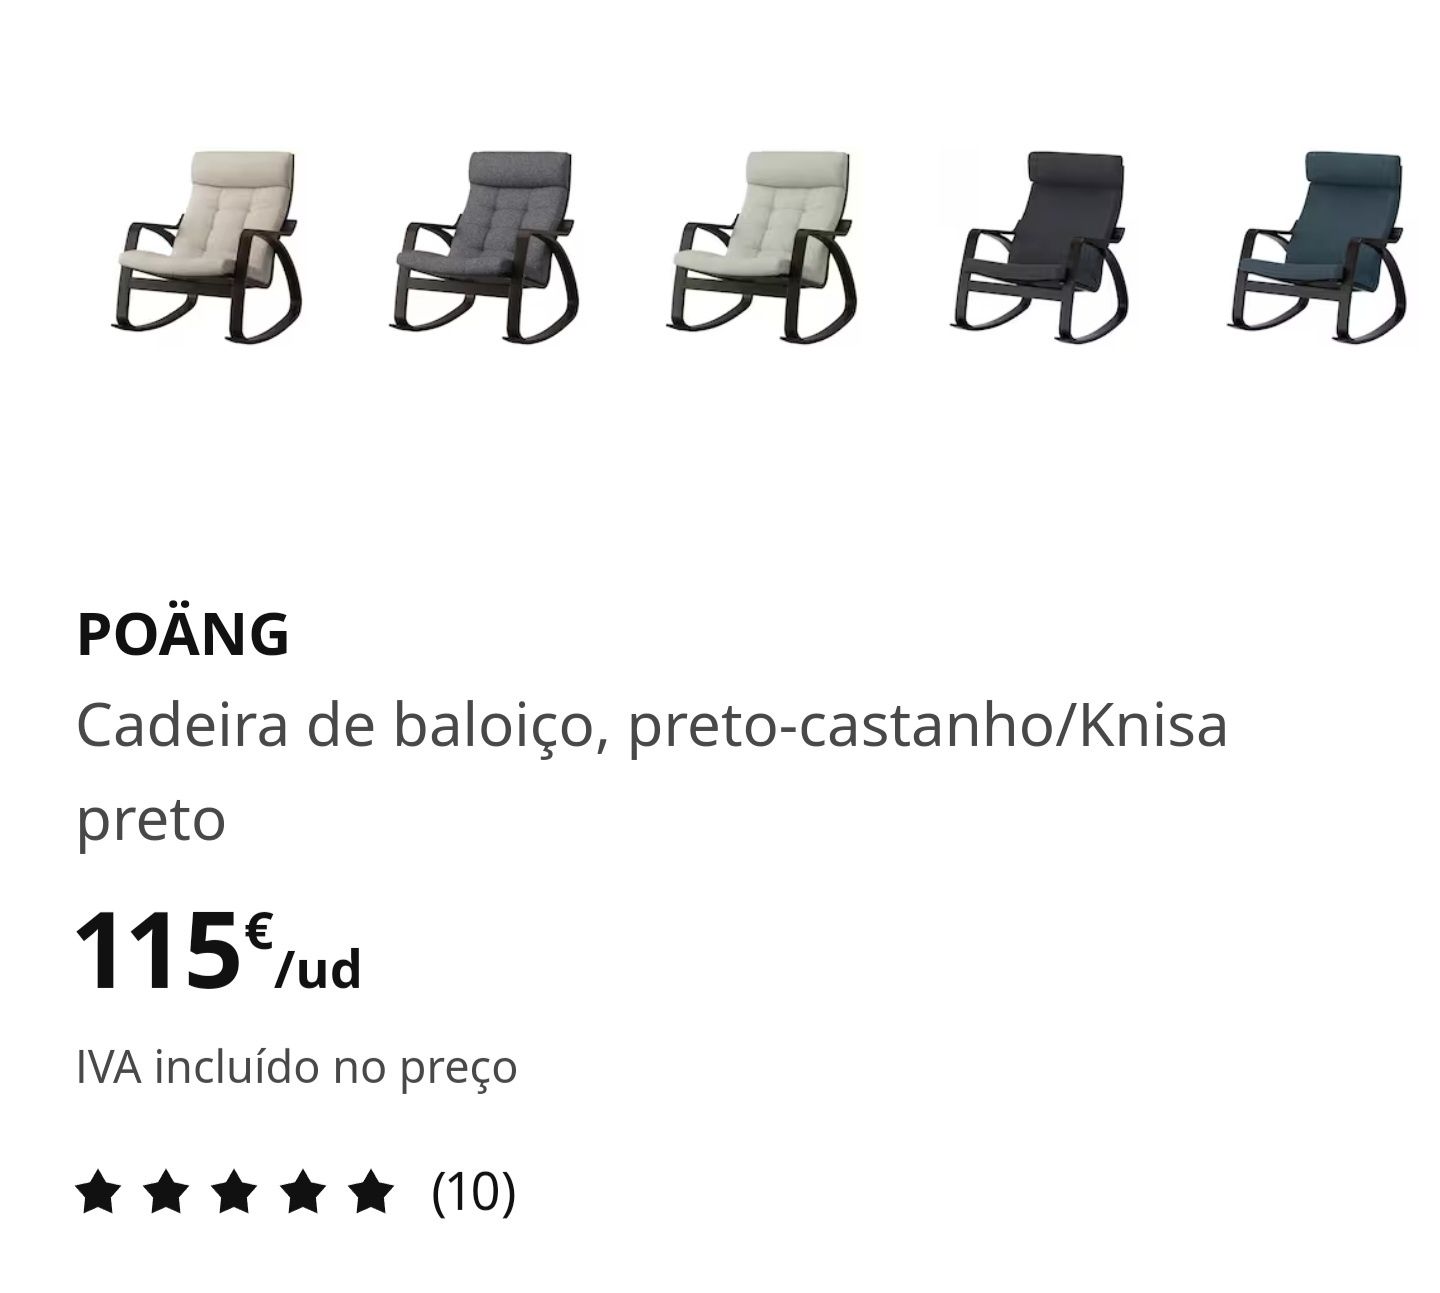 Cadeira de Baloiço Poäng - IKEA